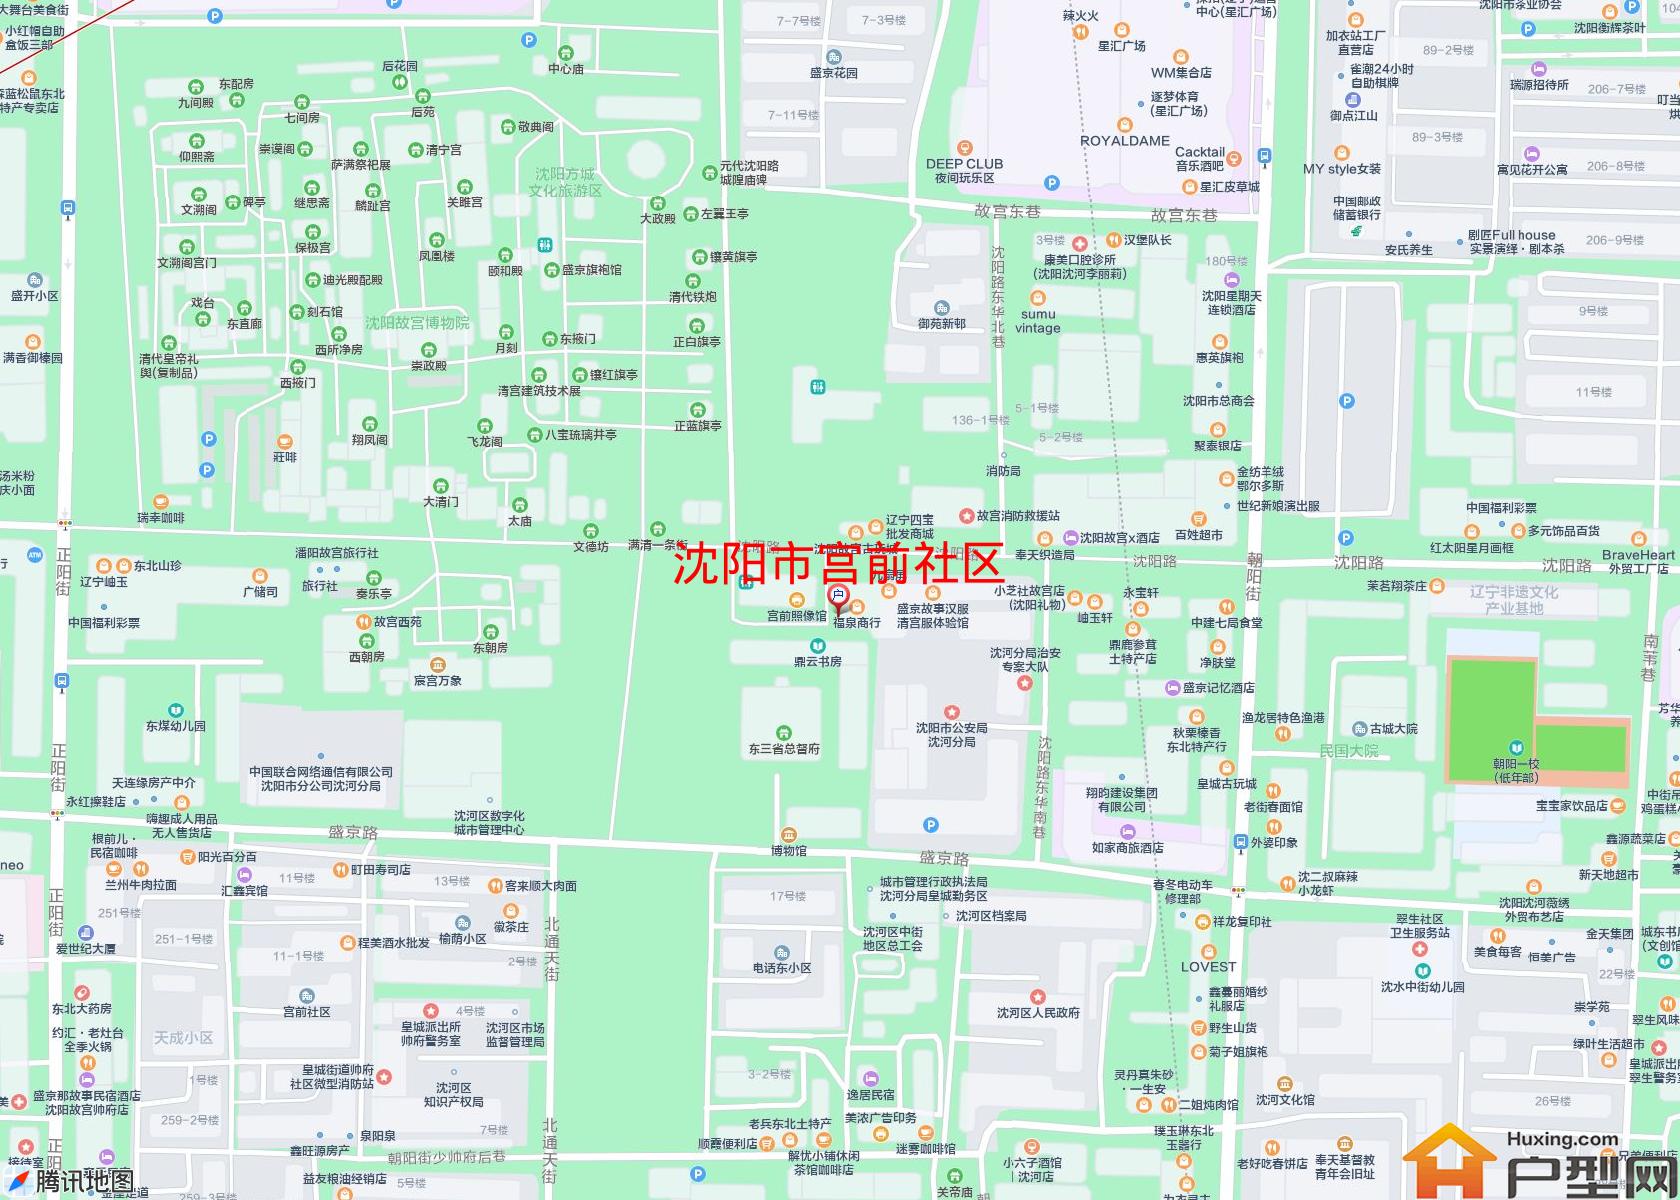 宫前社区小区 - 户型网